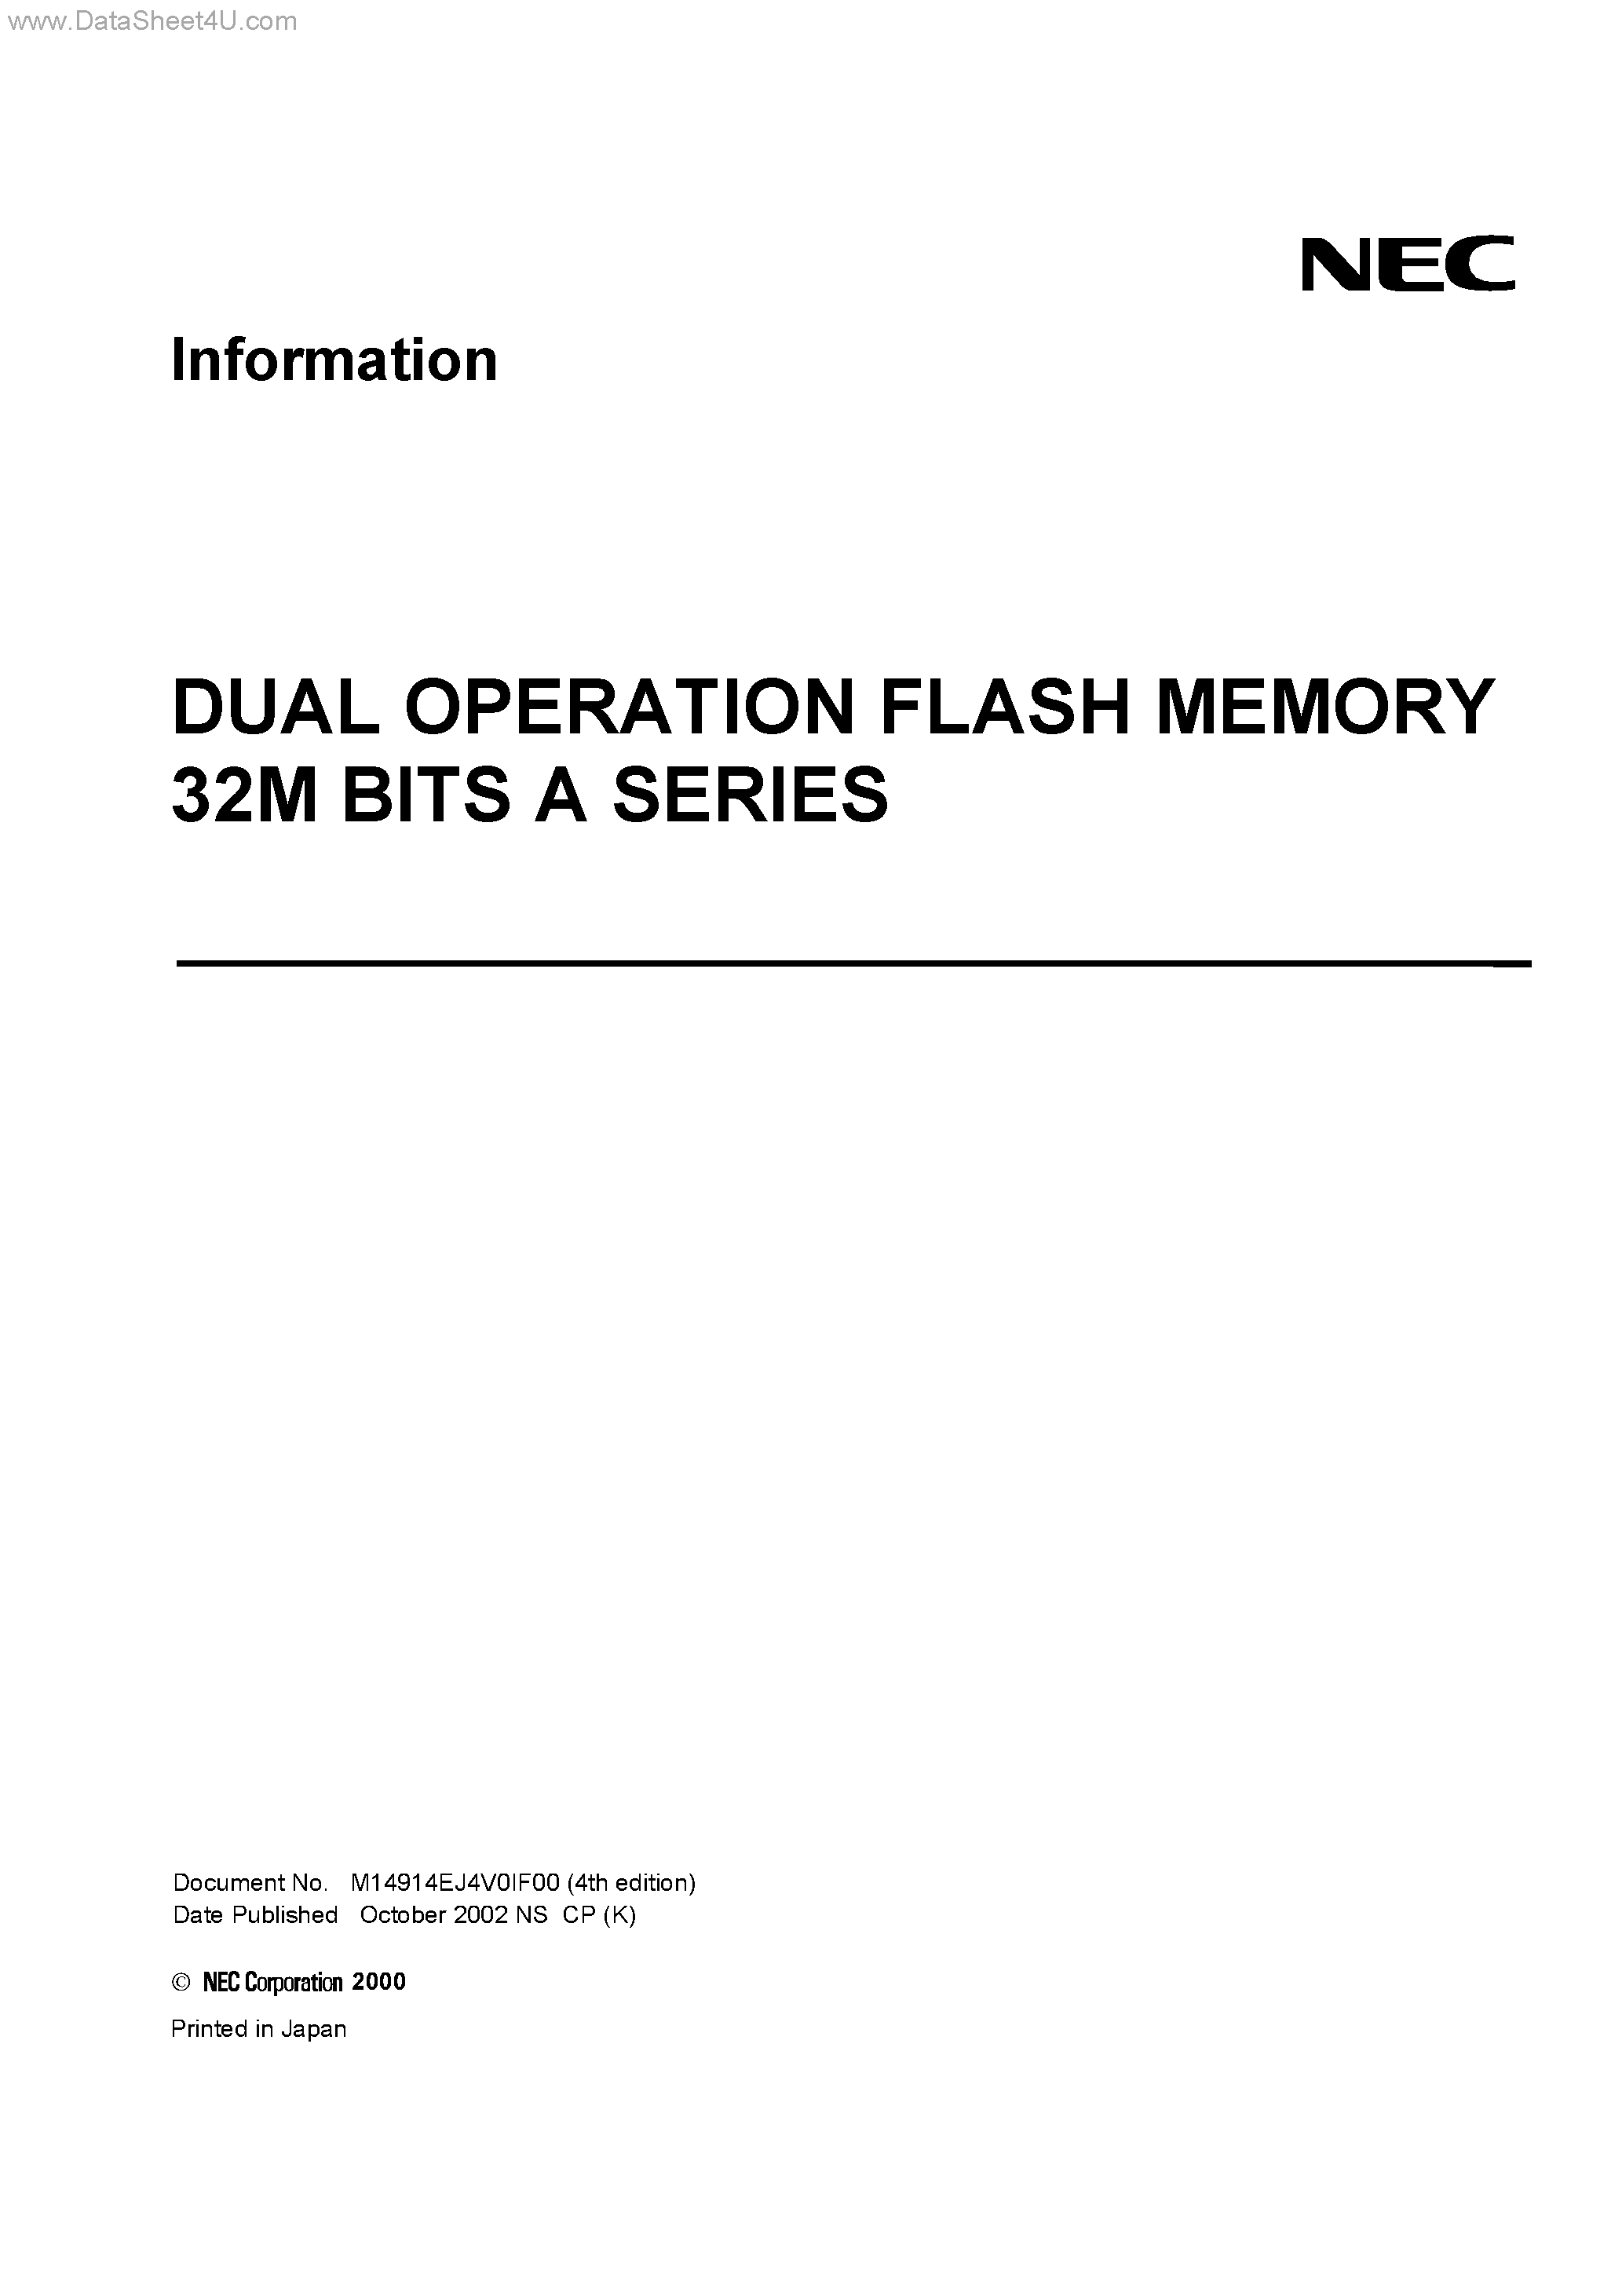 Даташит UPD29F032202AL-X - DUAL OPERATION FLASH MEMORY 32M BITS A SERIES страница 1